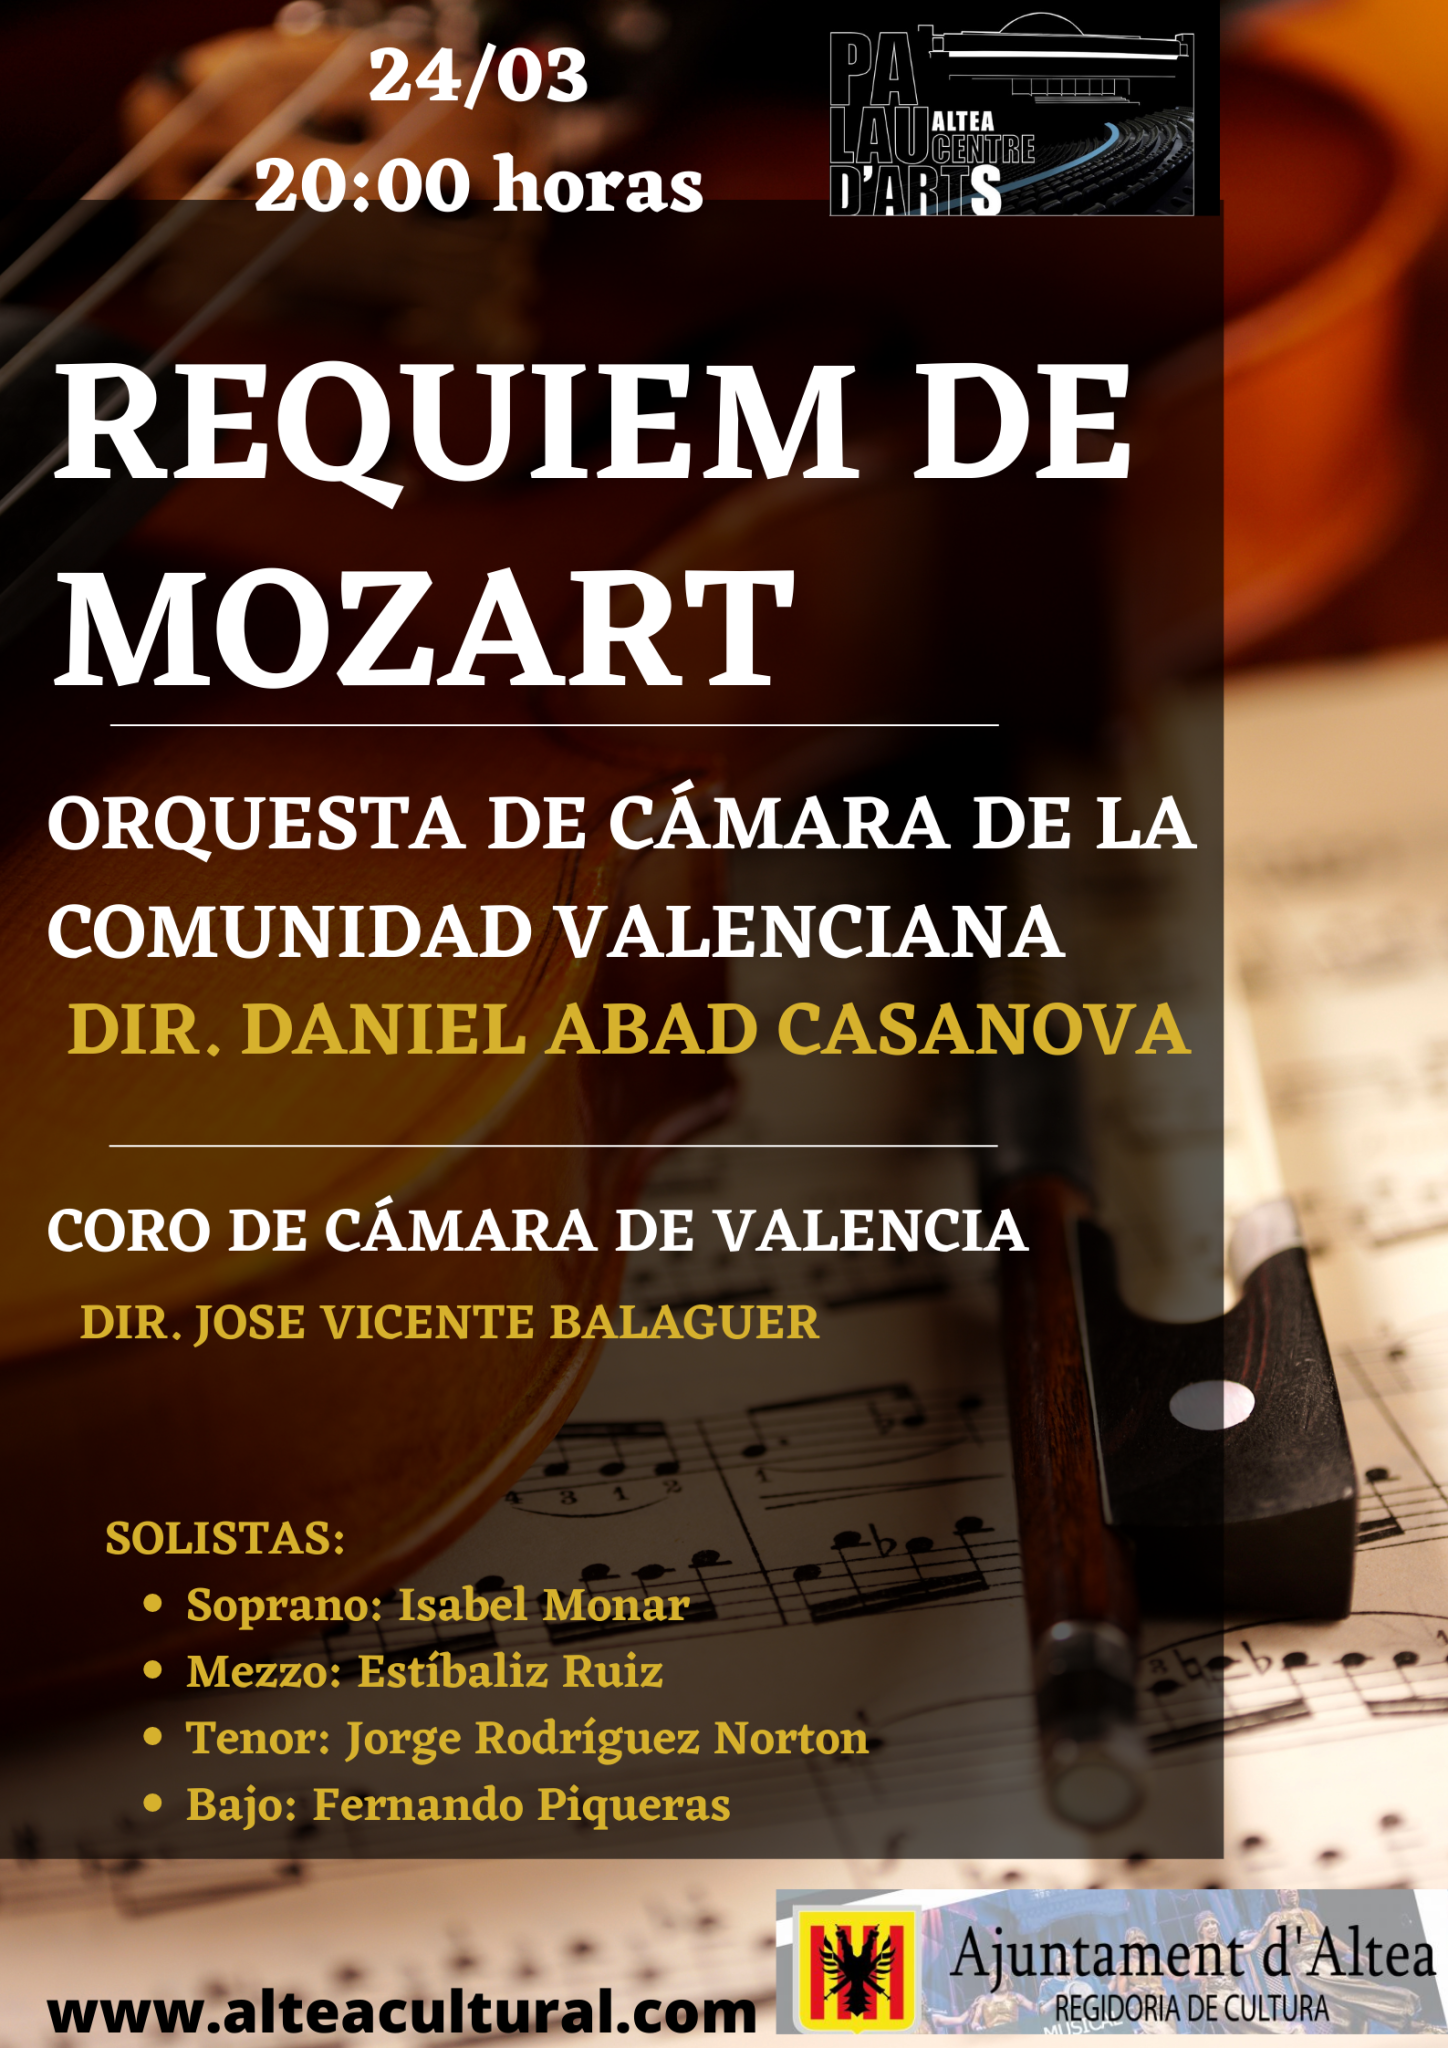 L’orquestra de cambra de la Comunitat Valenciana interpretarà el Rèquiem de Mozart en el Palau Altea